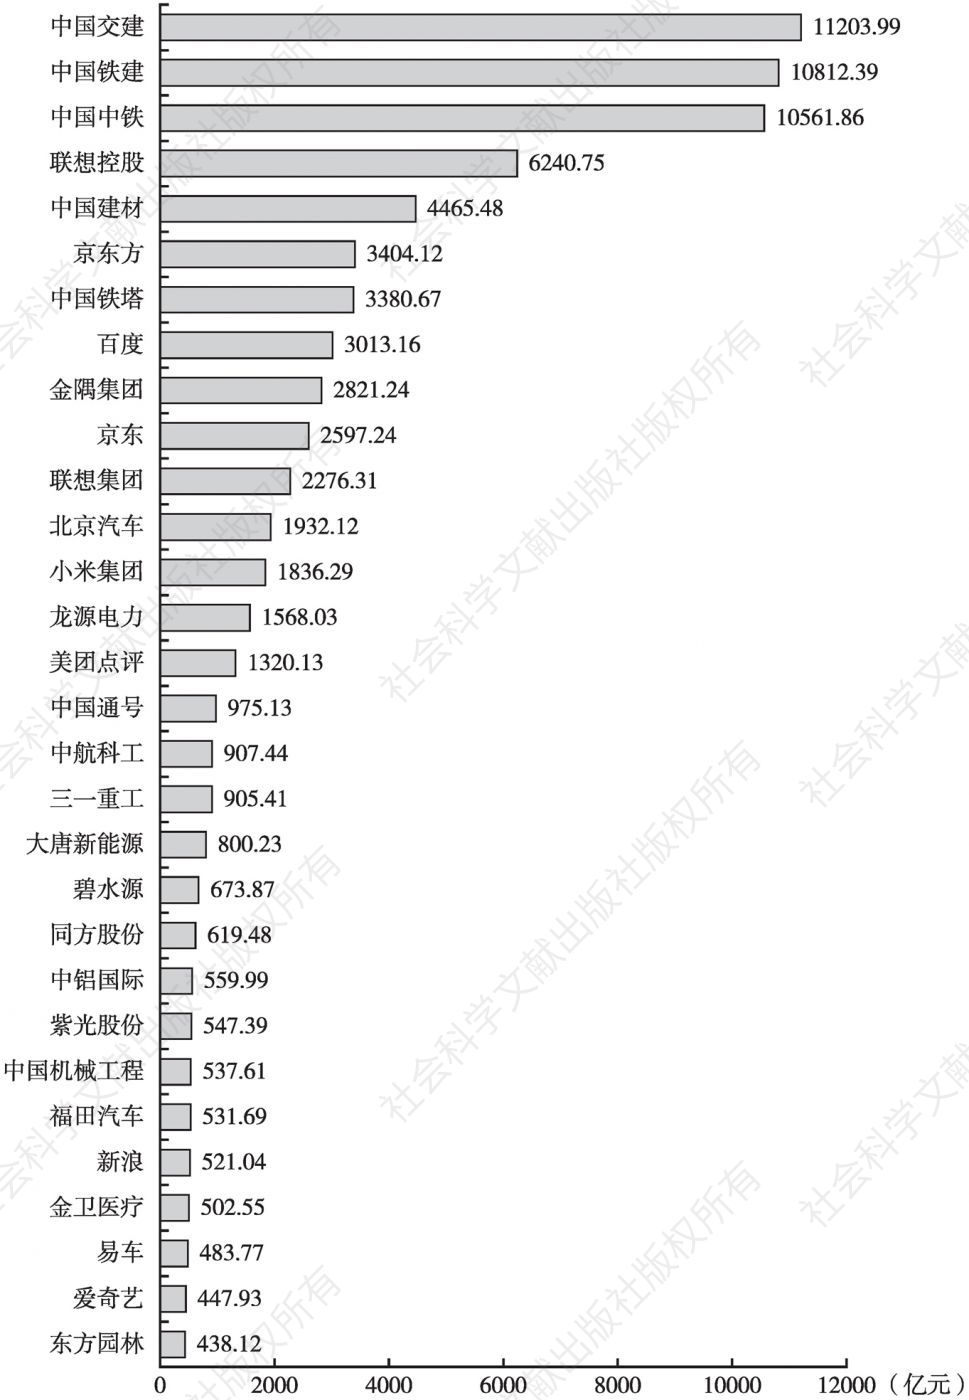 图1 2019年中关村上市公司总资产排名（前30位）